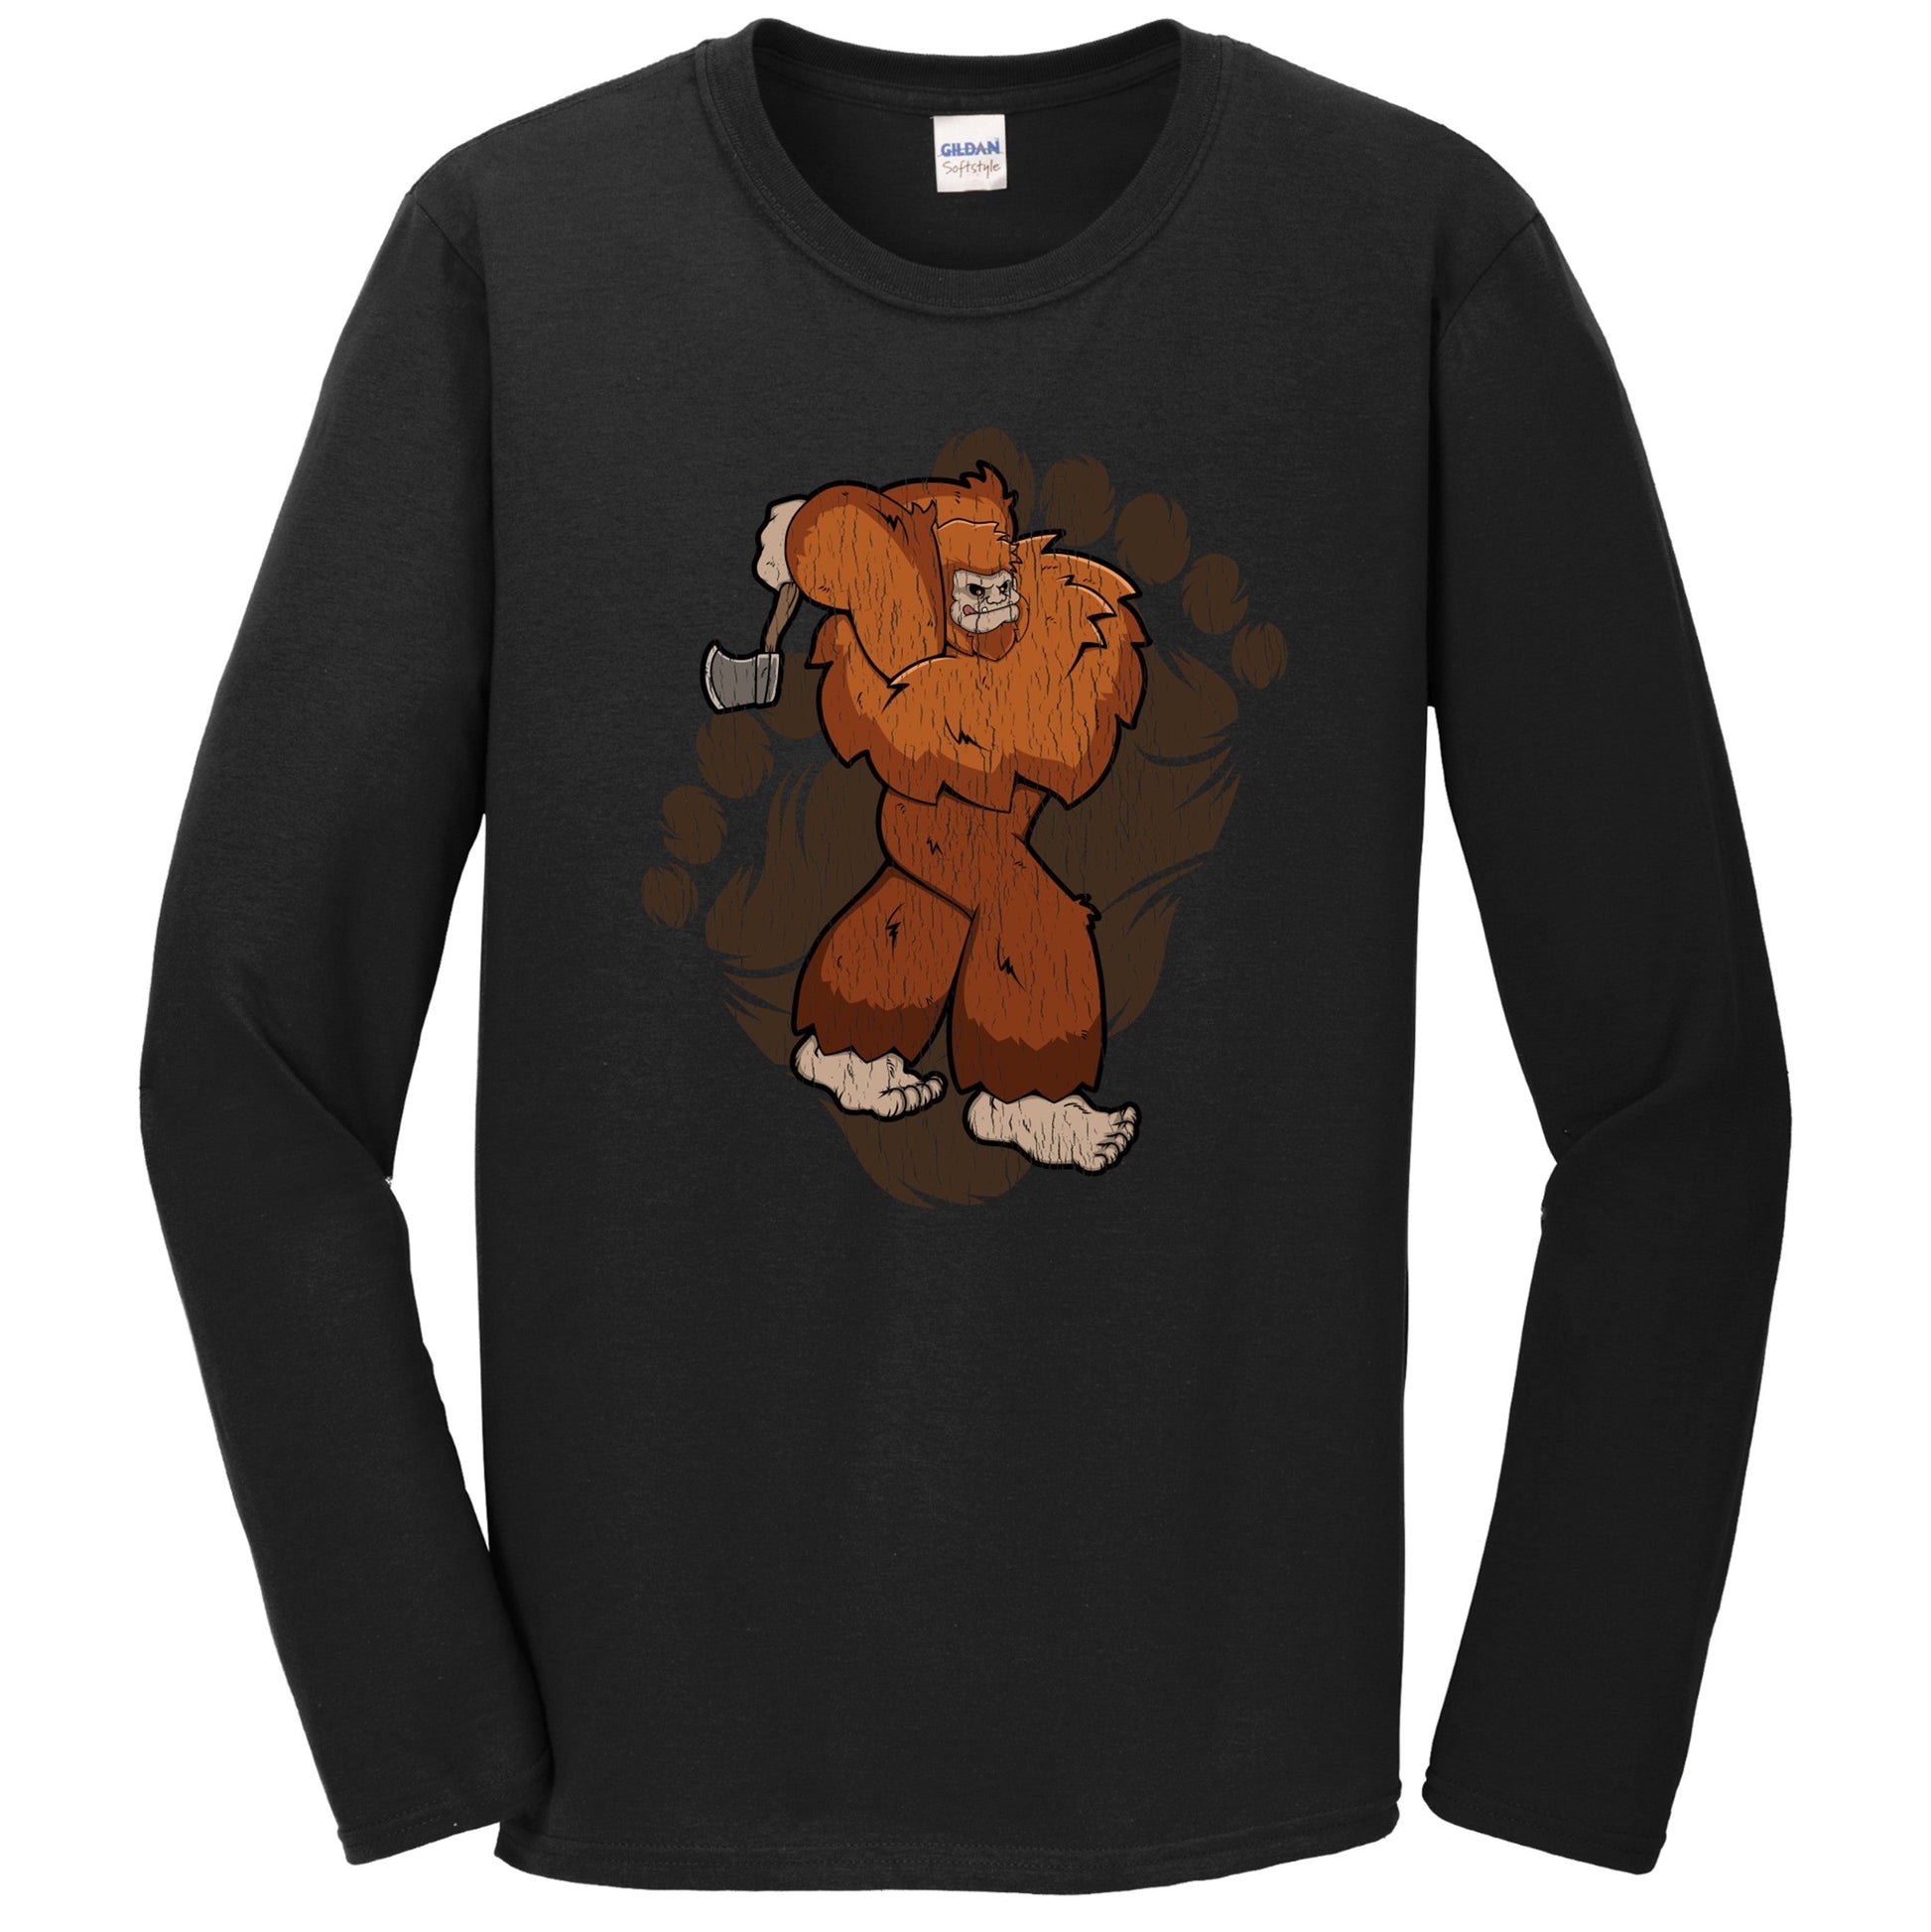 Bigfoot Axe Throwing Shirt - Sasquatch Throwing Axe Long Sleeve T-Shirt